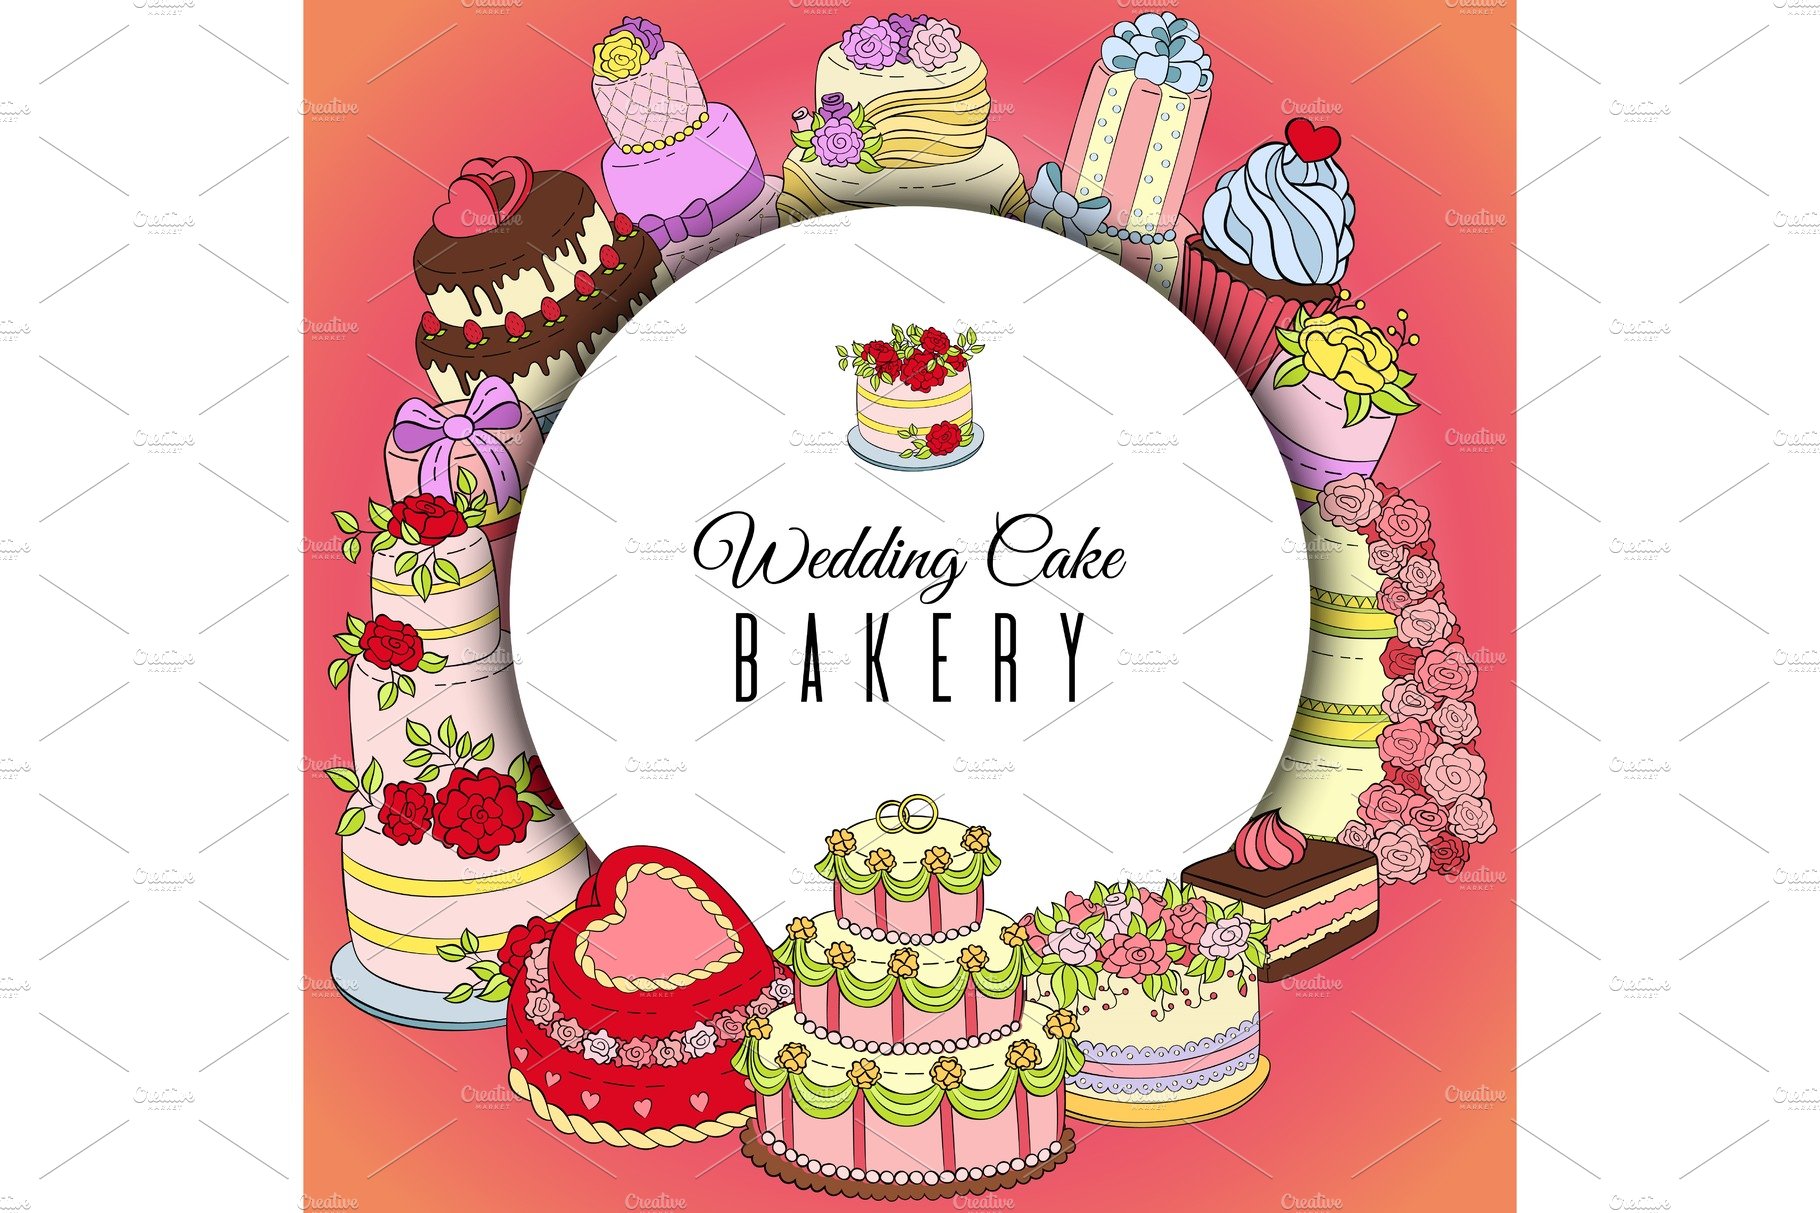 Wedding cake bakery round pattern cover image.